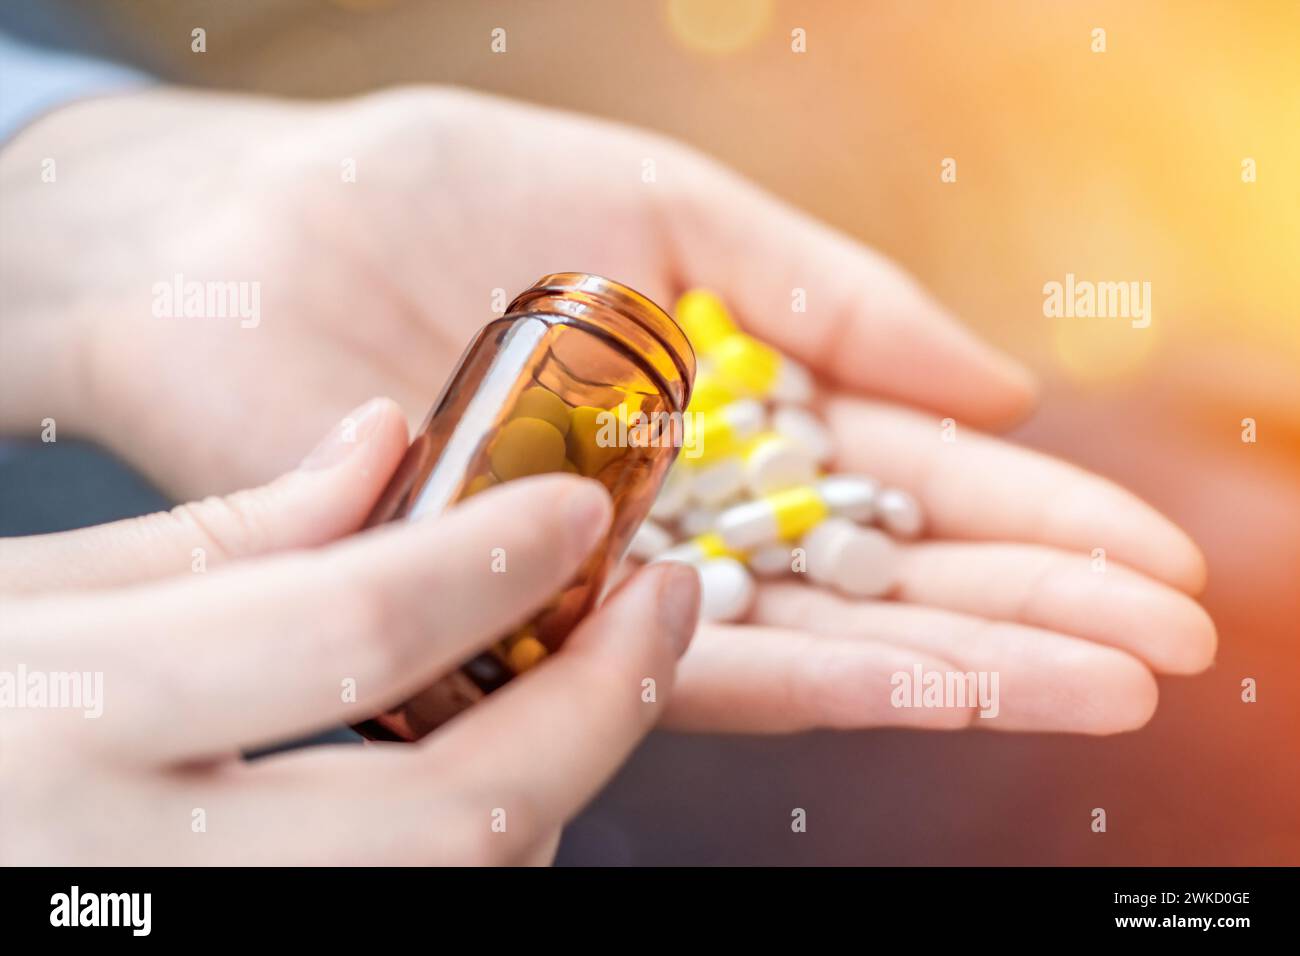 Das Konzept der Einnahme von Medikamenten, der Pflege Ihrer Gesundheit, das Problem der Selbstmedikation und der Selbstdiagnose Stockfoto